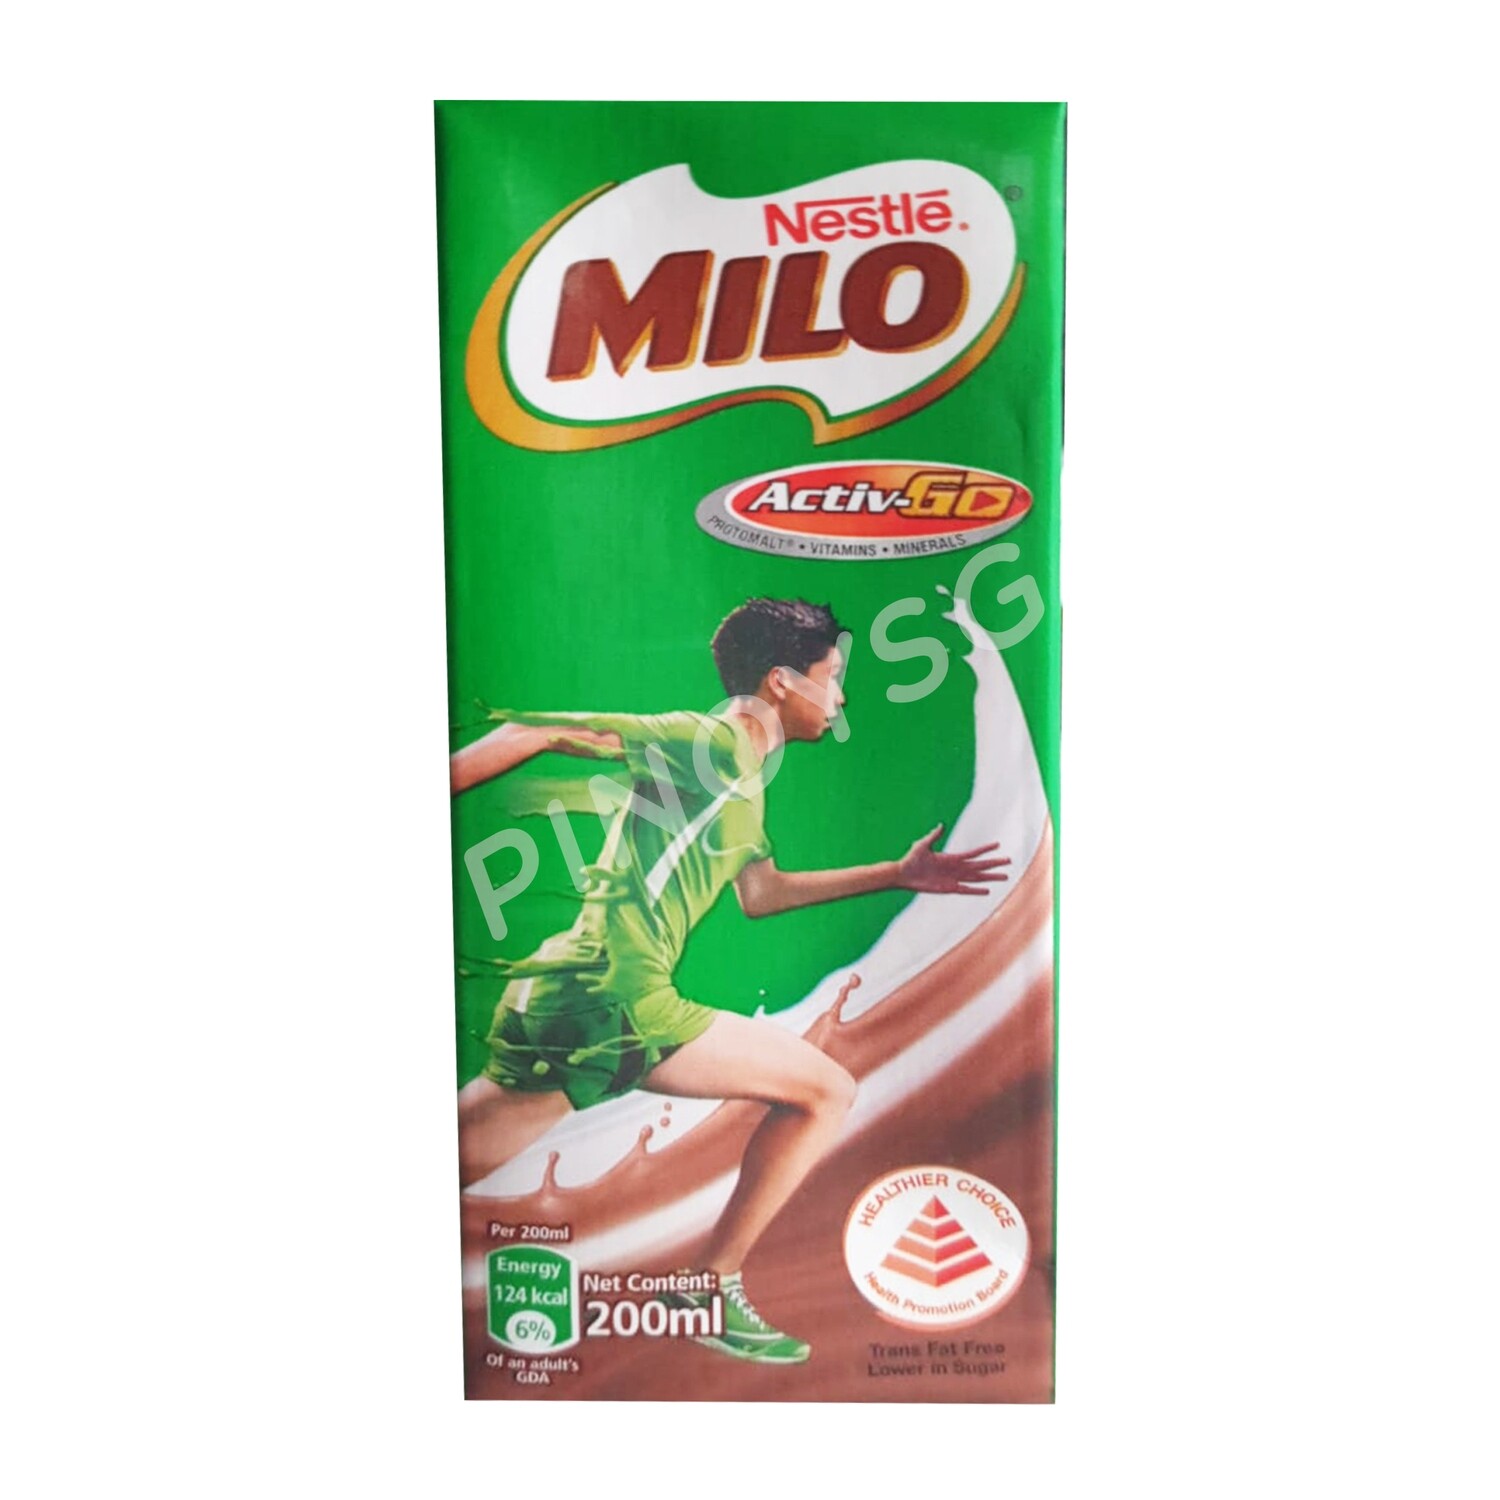 Milo Active-Go 200ml